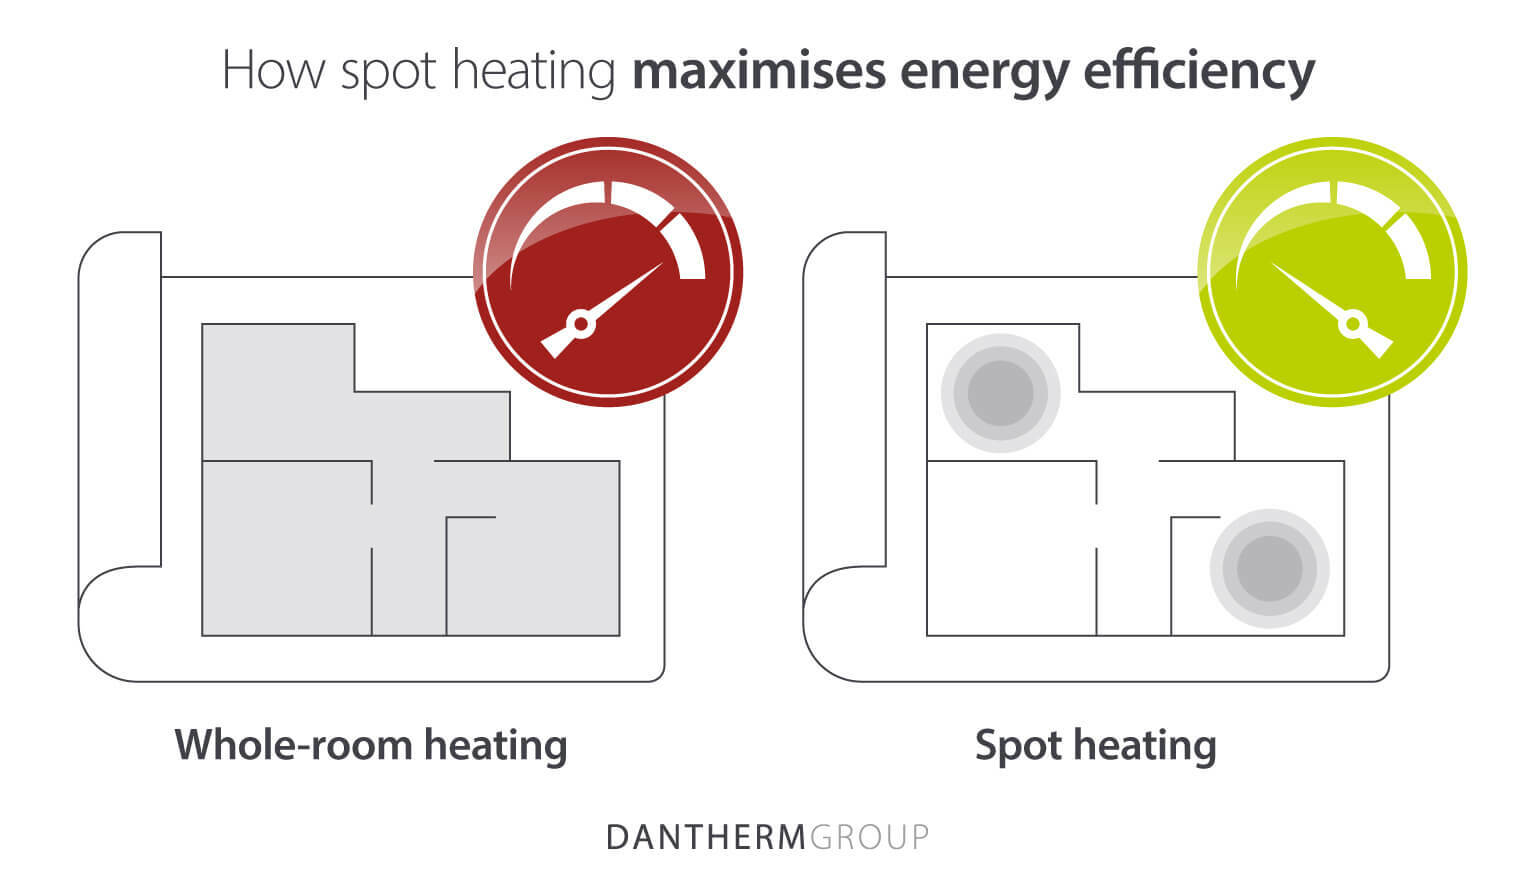 Comment le chauffage ponctuel maximise l’efficacité énergétique dans les grands bâtiments.